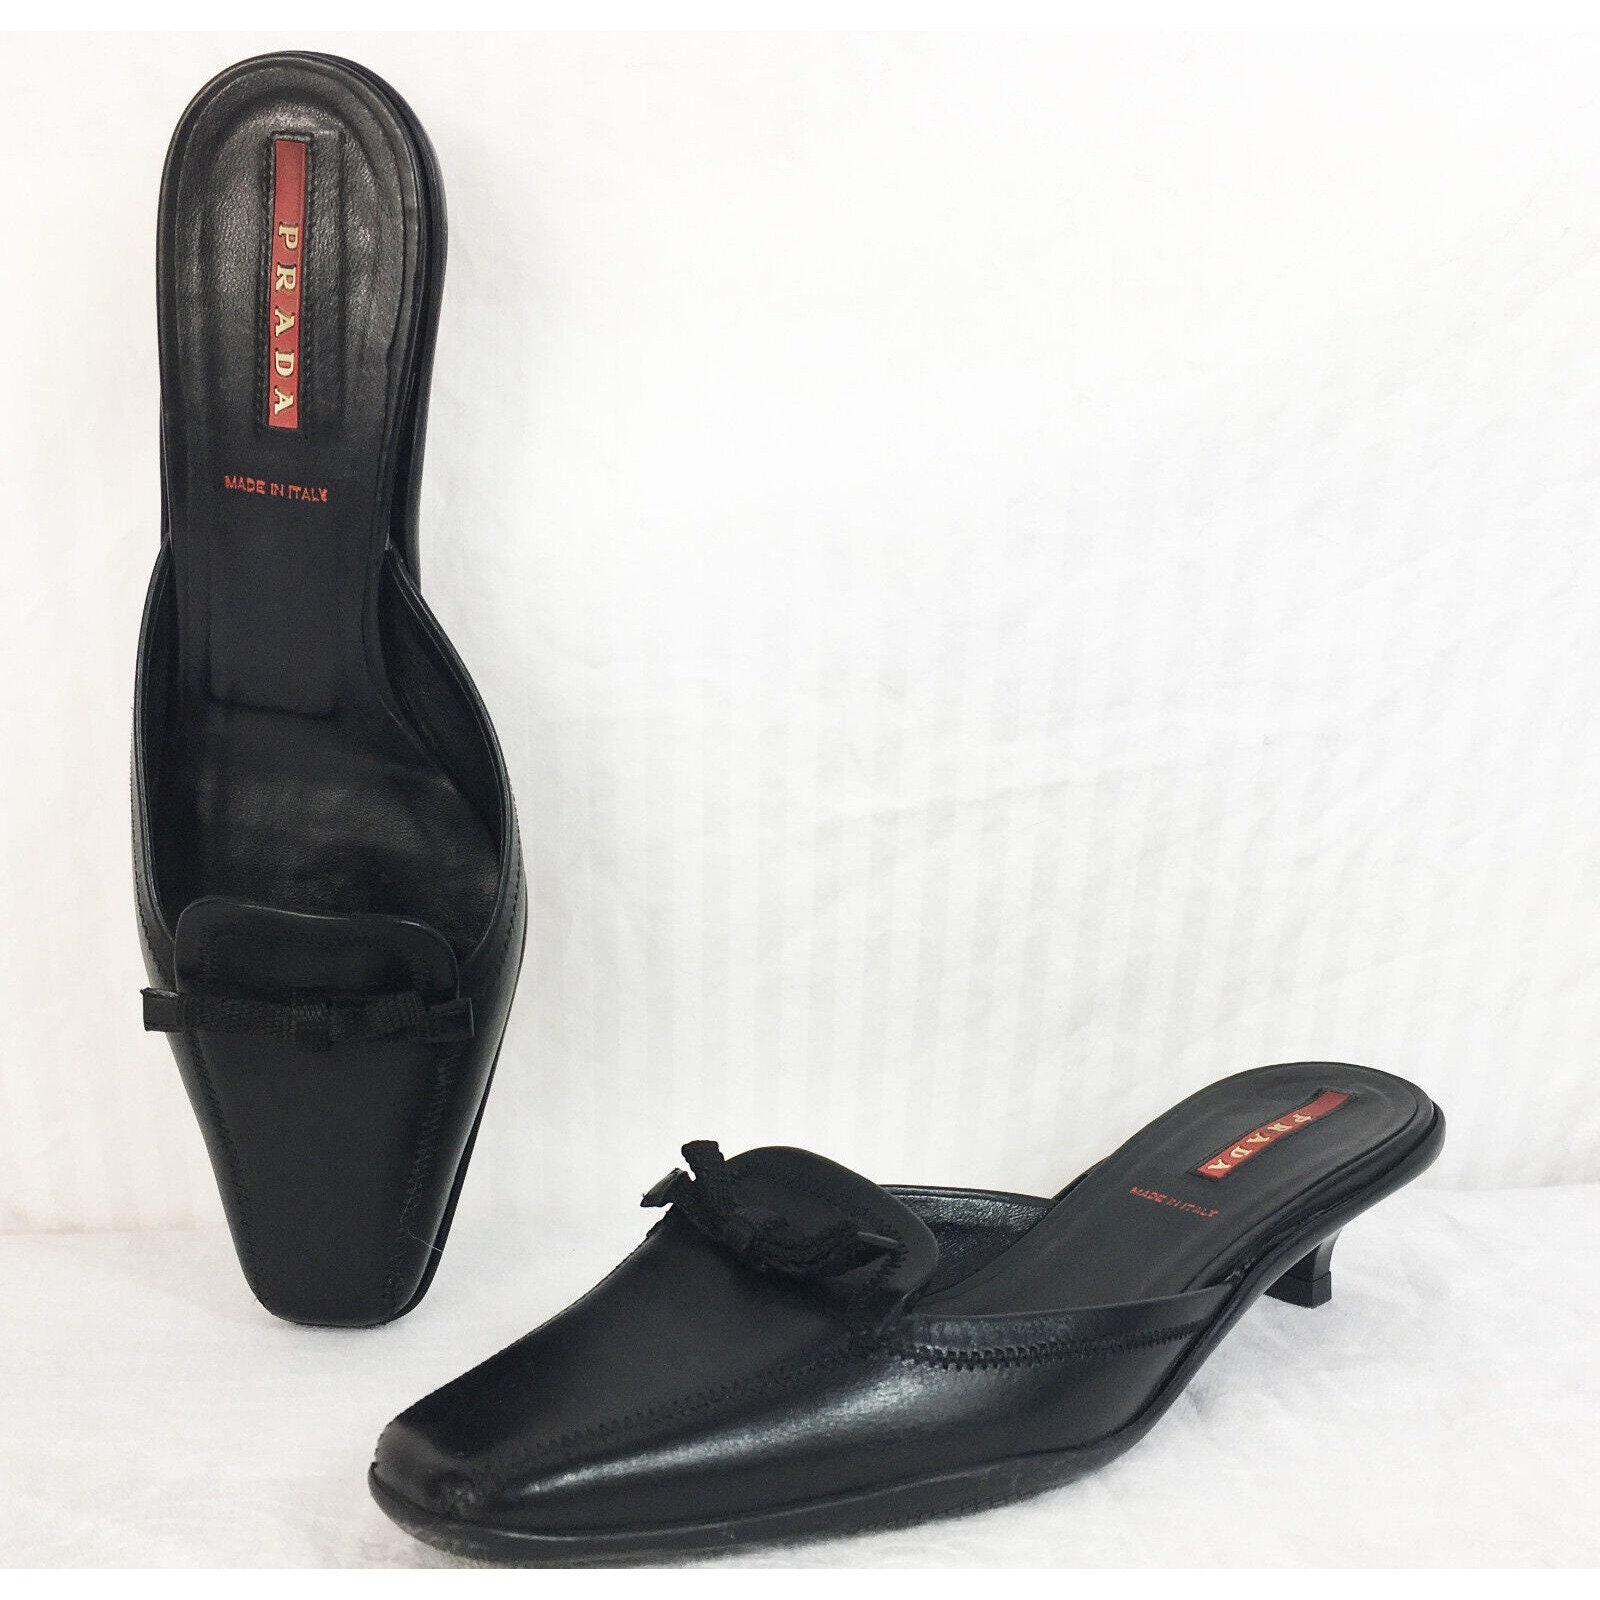 Leer D'Orsay Kittenheel/Pump Maat-36.5 90's/Y2K Vintage Schoenen damesschoenen Pumps Zwart Prada-'Calzature Donna' 